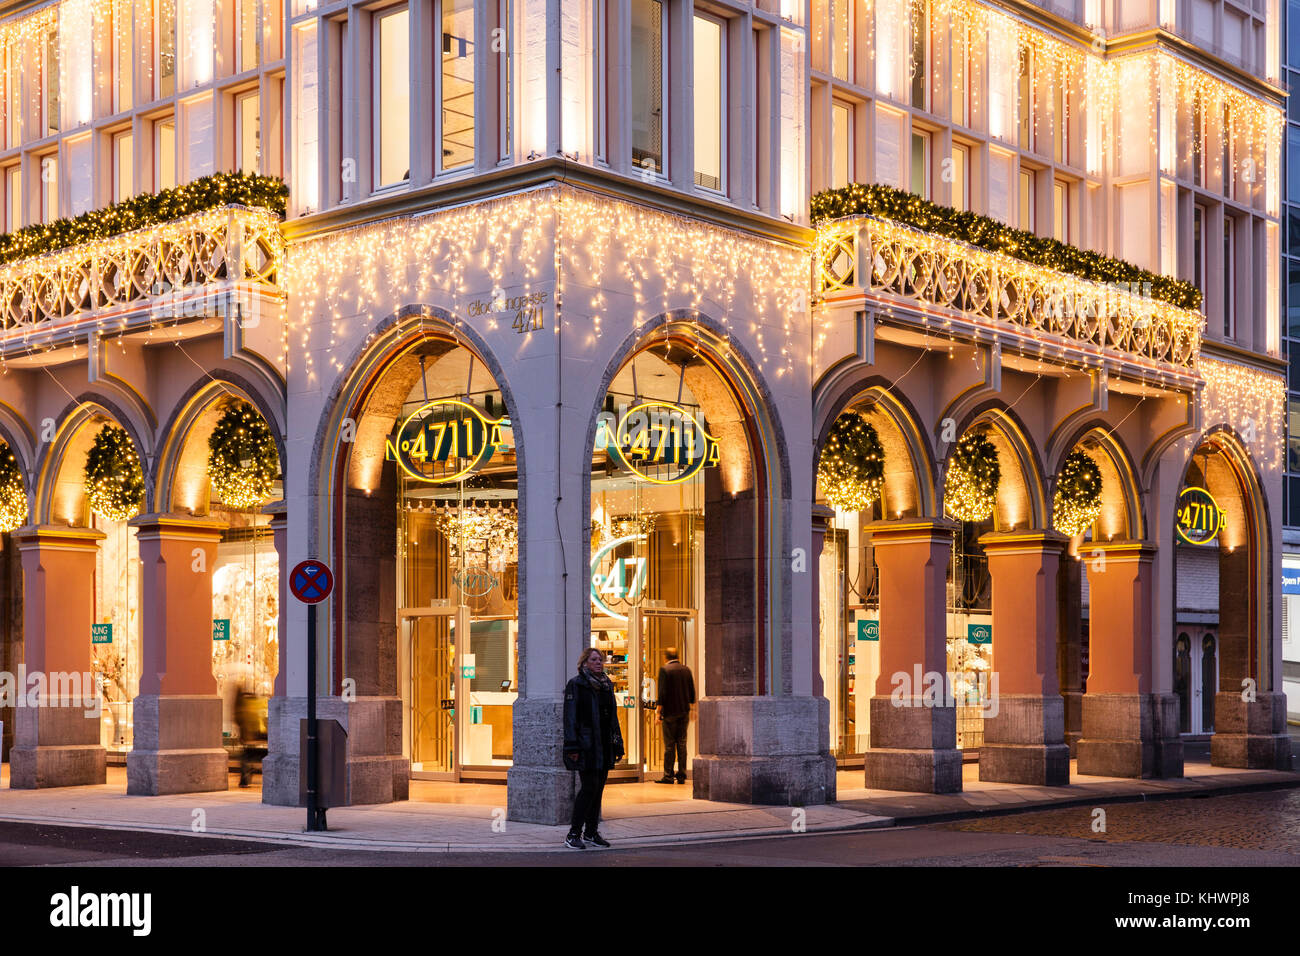 Alemania, Colonia, la casa de 4711 en el Glockengasse, casa ancestral de la fábrica de perfumes Muelhens, iluminación durante la época de Navidad. Alemania Foto de stock